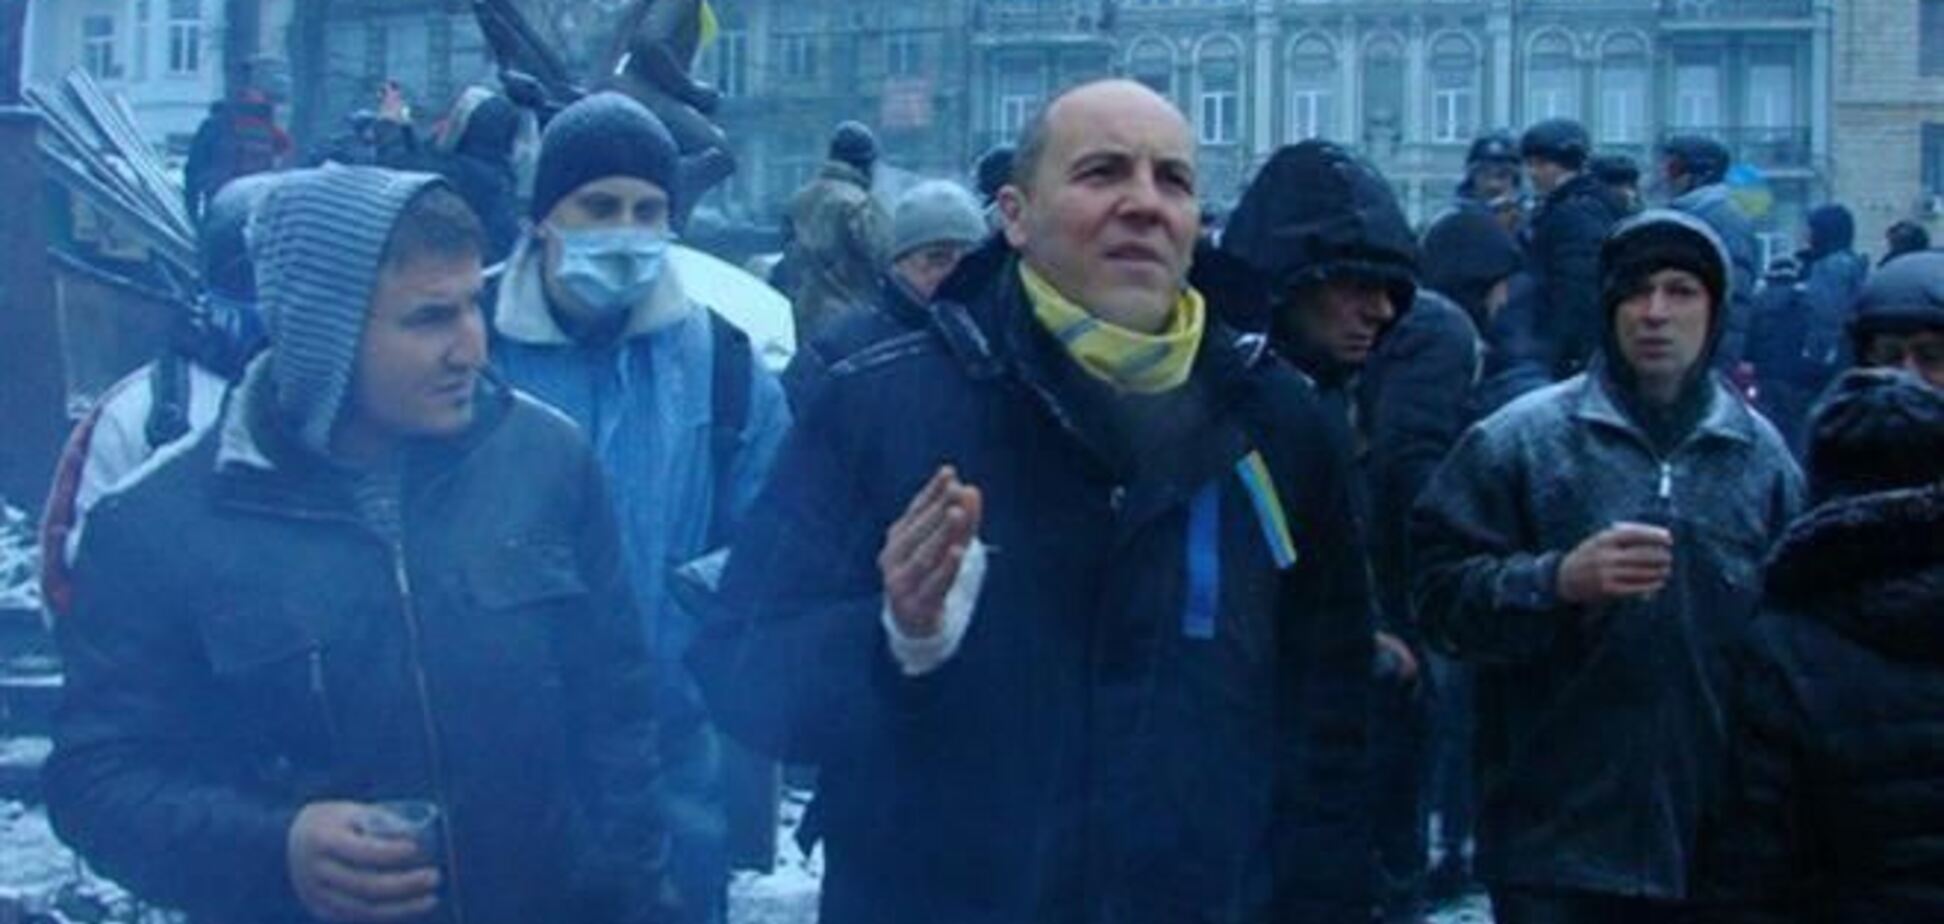 Самооборона Майдана контролирует правительственный квартал – Парубий 